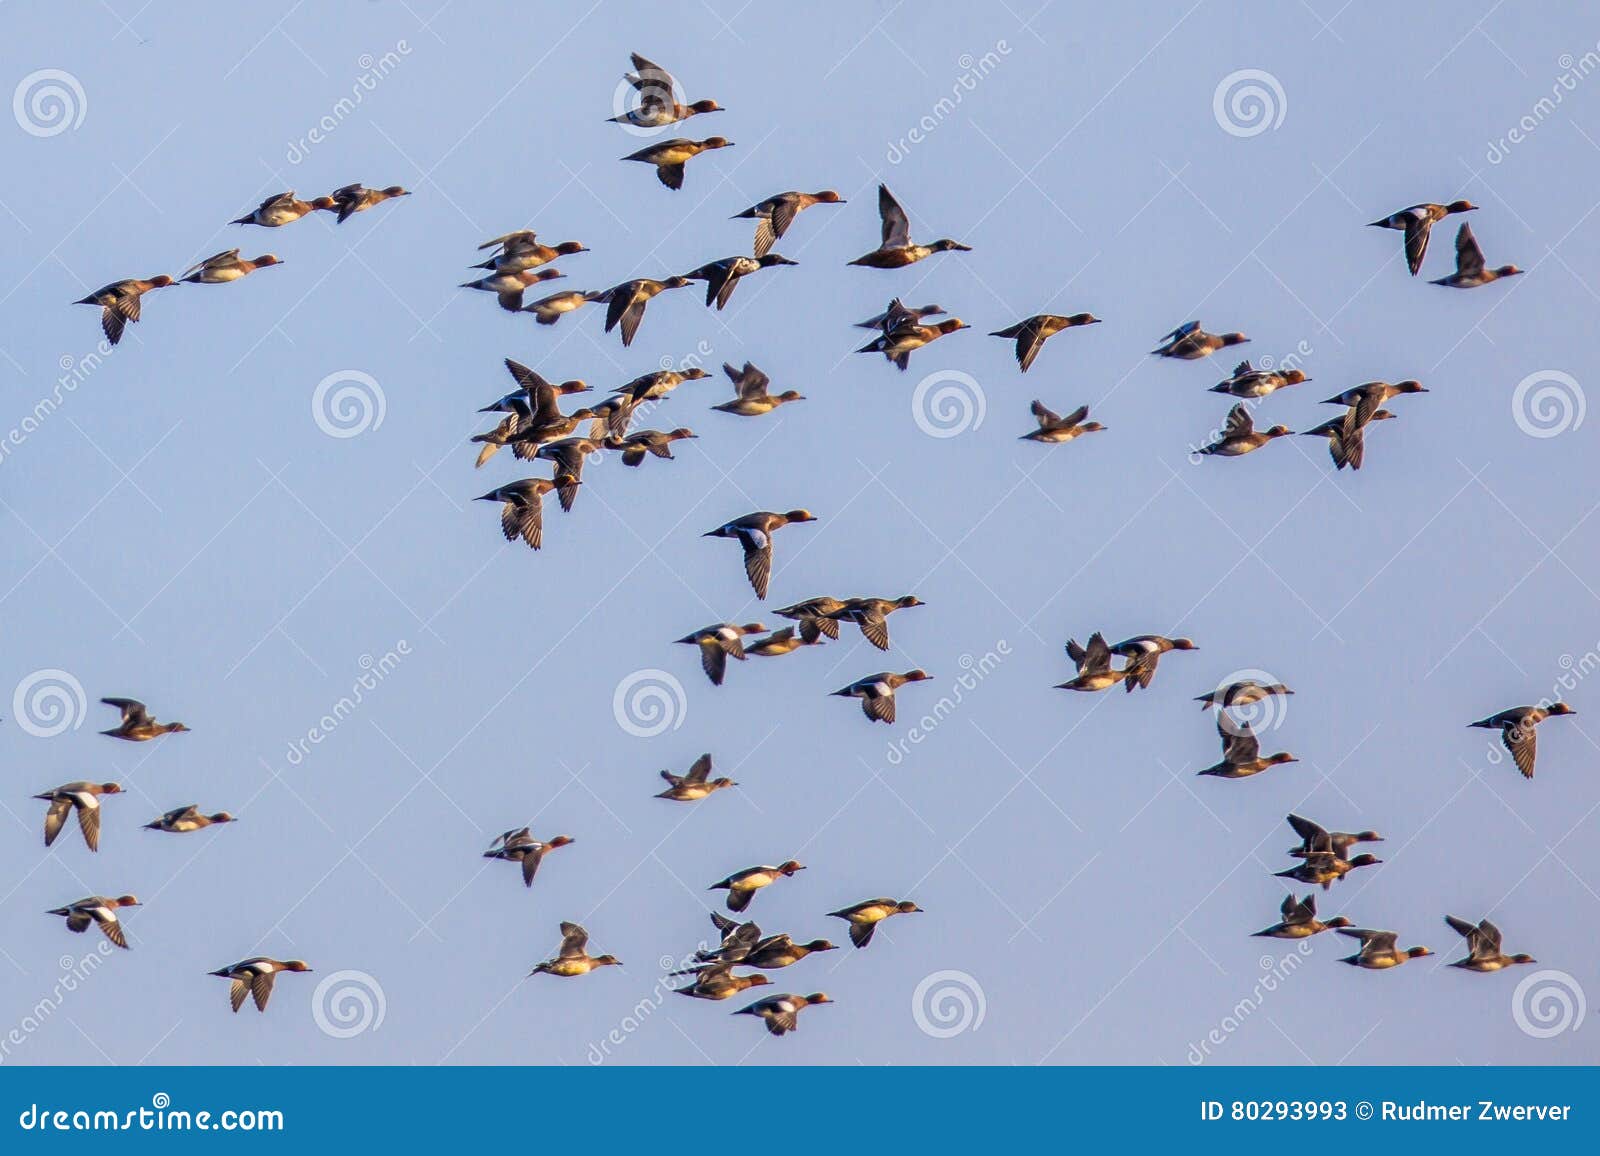 flock of different species of duck